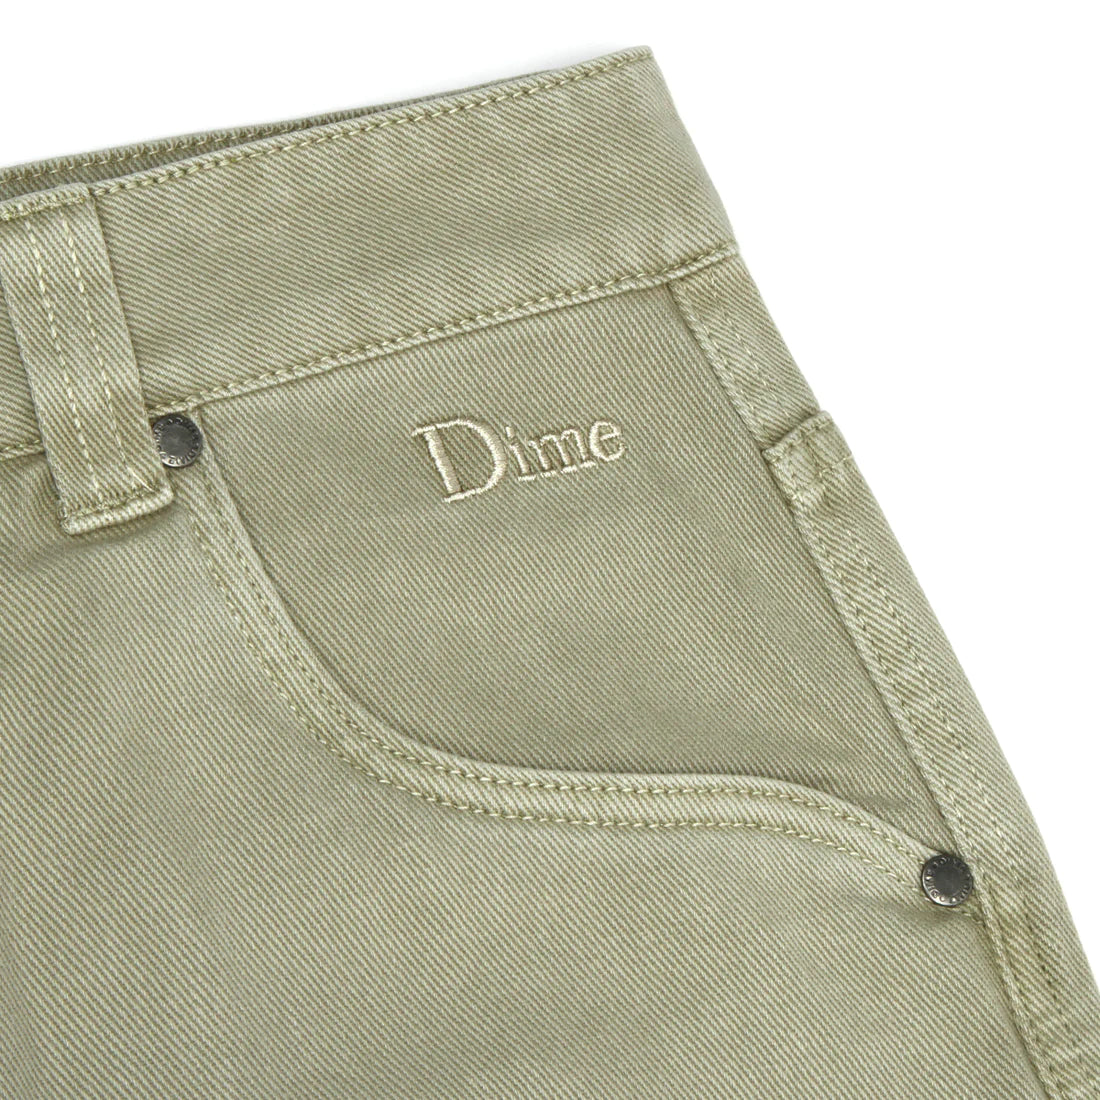 Dime denim jeans greenMもう少し検討させていただきます